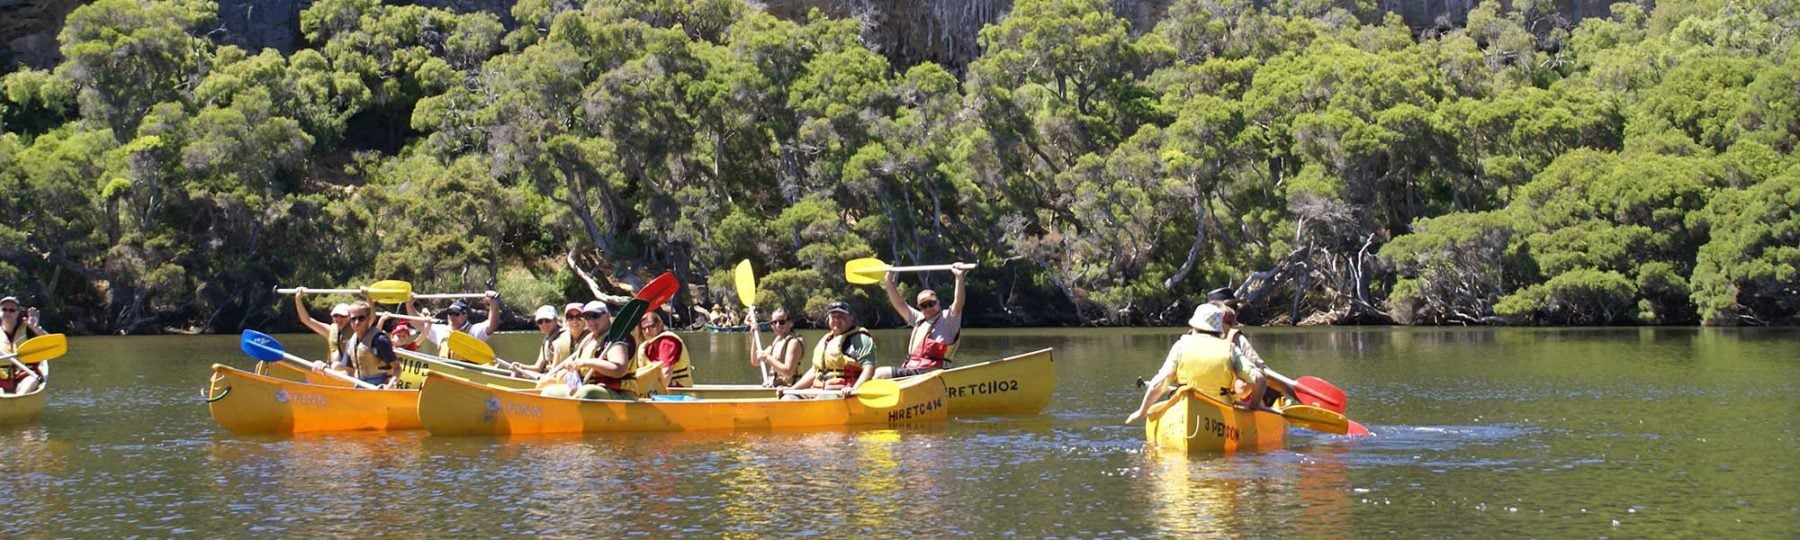 bushtucker canoe tours